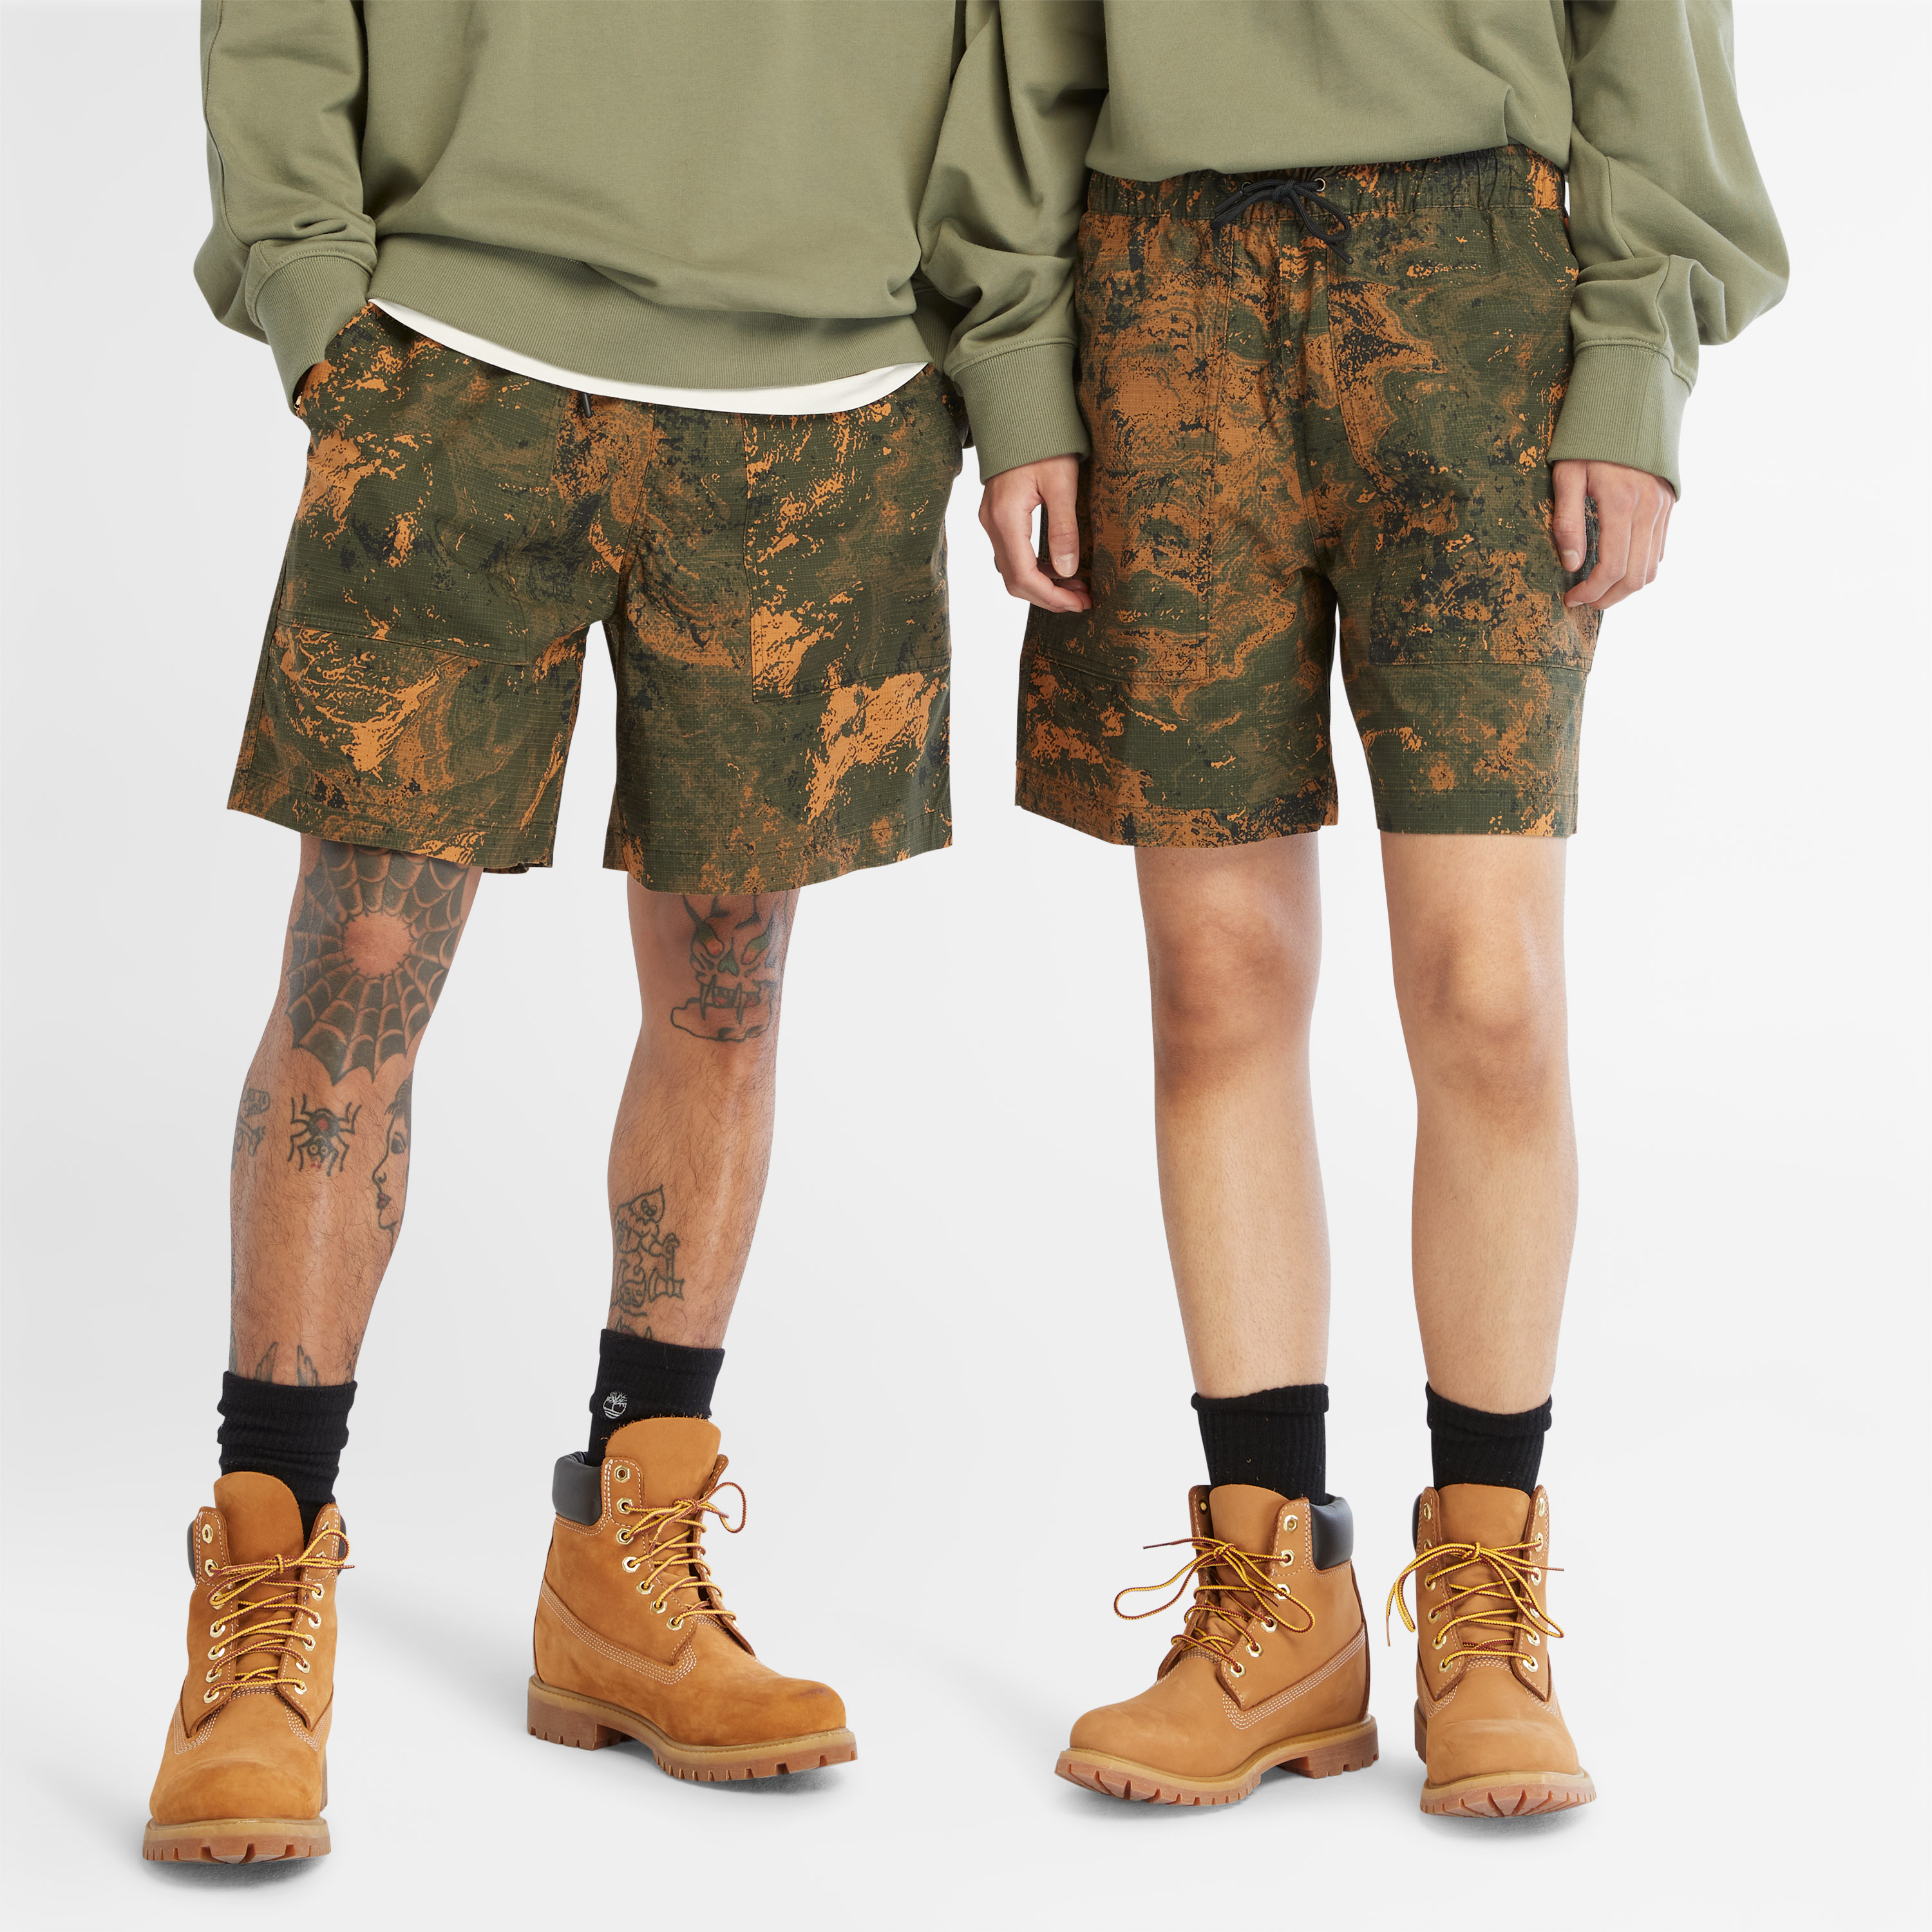 All Gender Printed Woven Regular Fit Shorts - Timberland Hong Kong